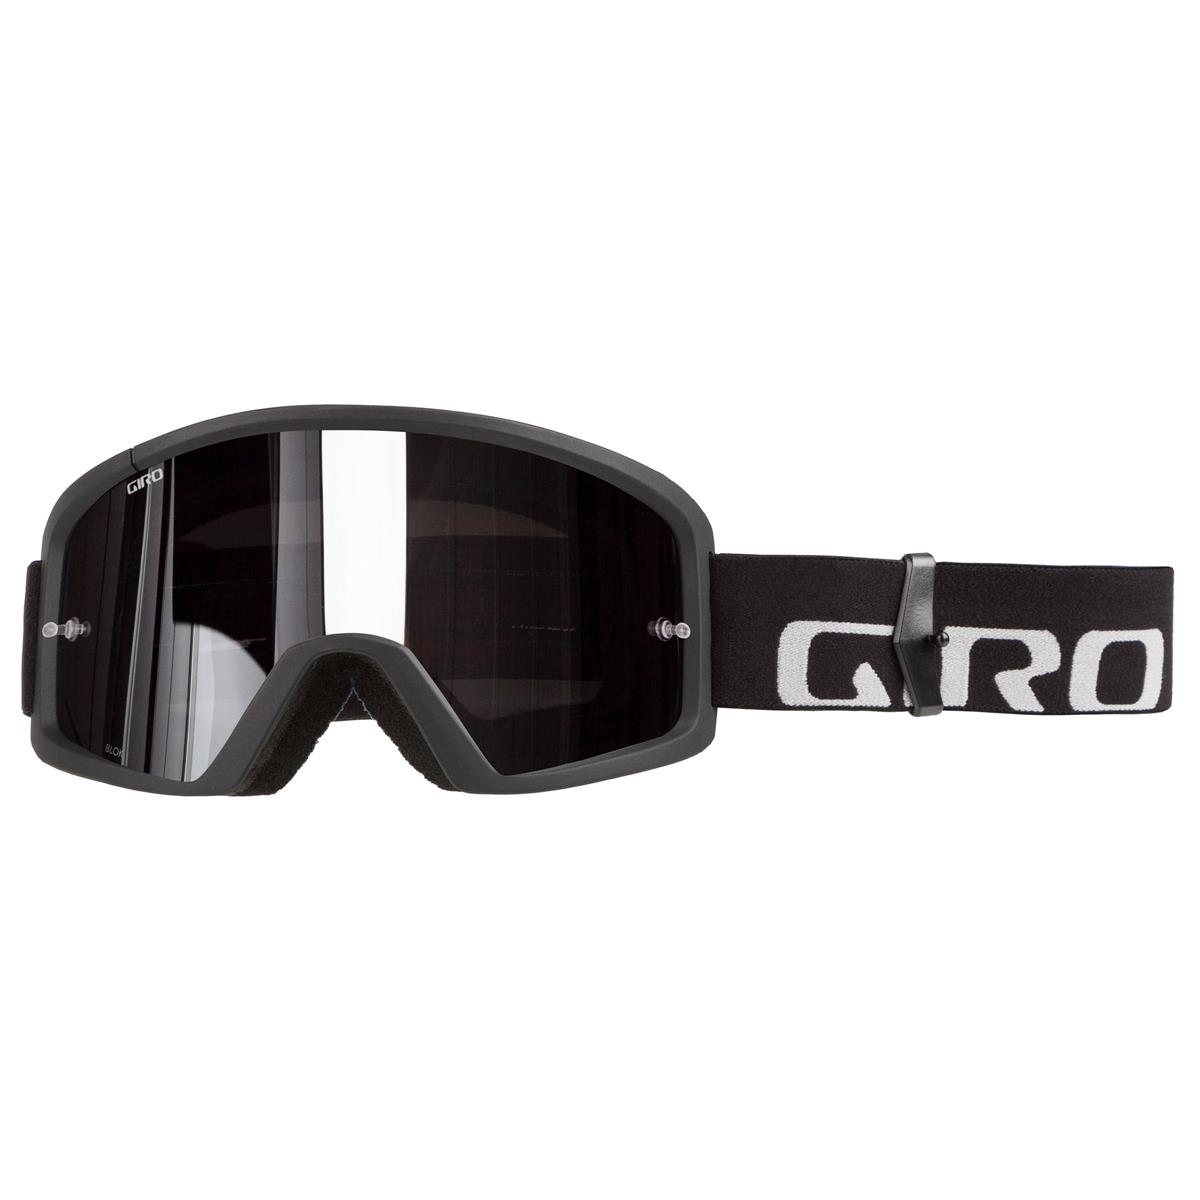 Giro Masque Blok Black/Grey - Grey/Silver Flash Clear Anti-Fog